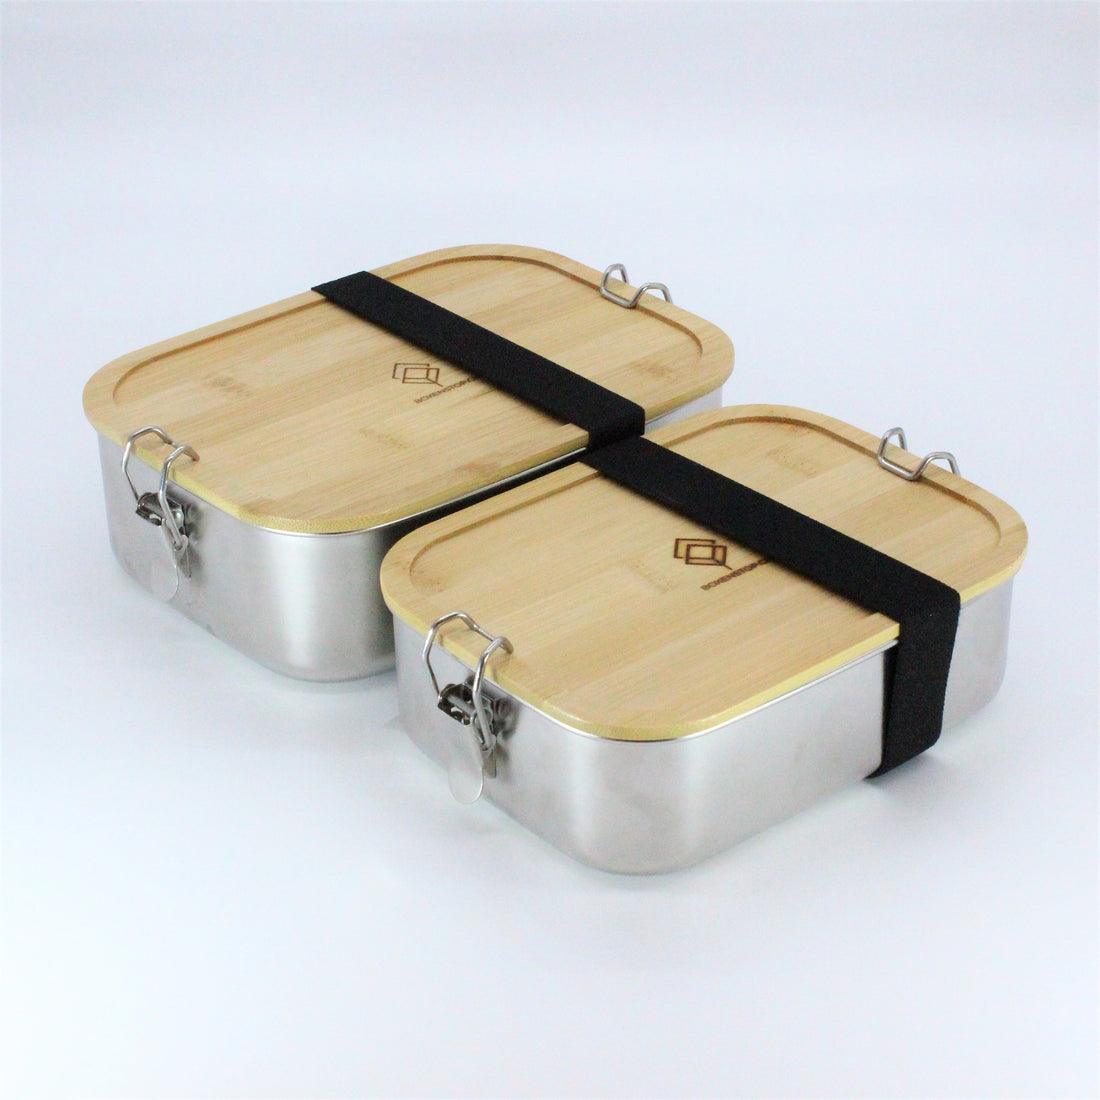 2x Premium Edelstahl Lunchbox 1200 ml, inkl. Bambus-Besteck, Ersatzdichtung, ÖKO-Baumwoll-Zugbeutel, Gummiband, auslaufsicher – geruchs- und geschmacksneutral